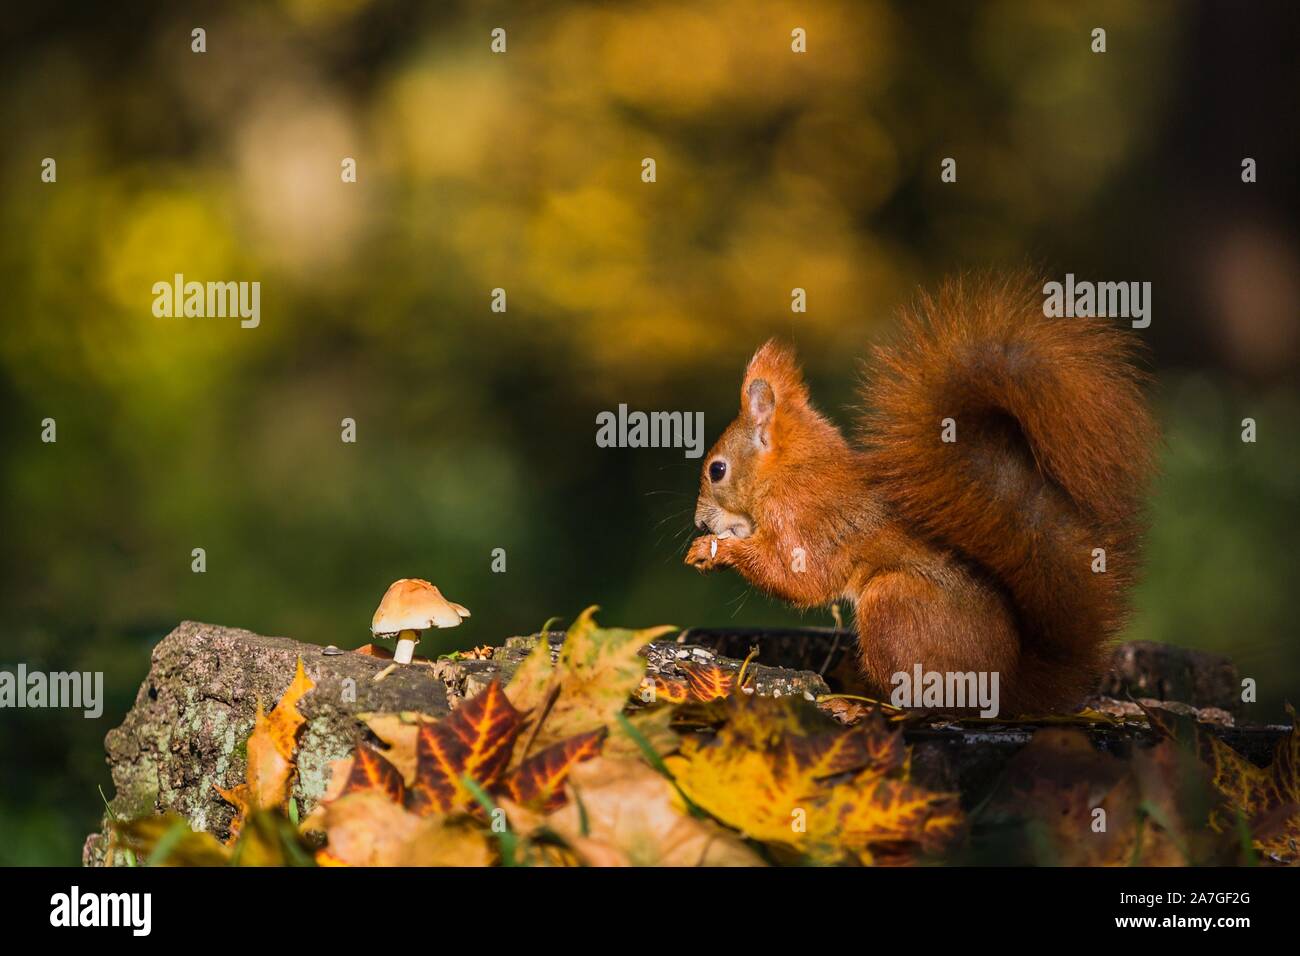 Portrait de l'Écureuil d'eurasie rouge avec queue pelucheuse assis sur une souche d'arbre couverts de feuilles colorées et d'un champignon qui se nourrissent de graines. Automne ensoleillé. Banque D'Images